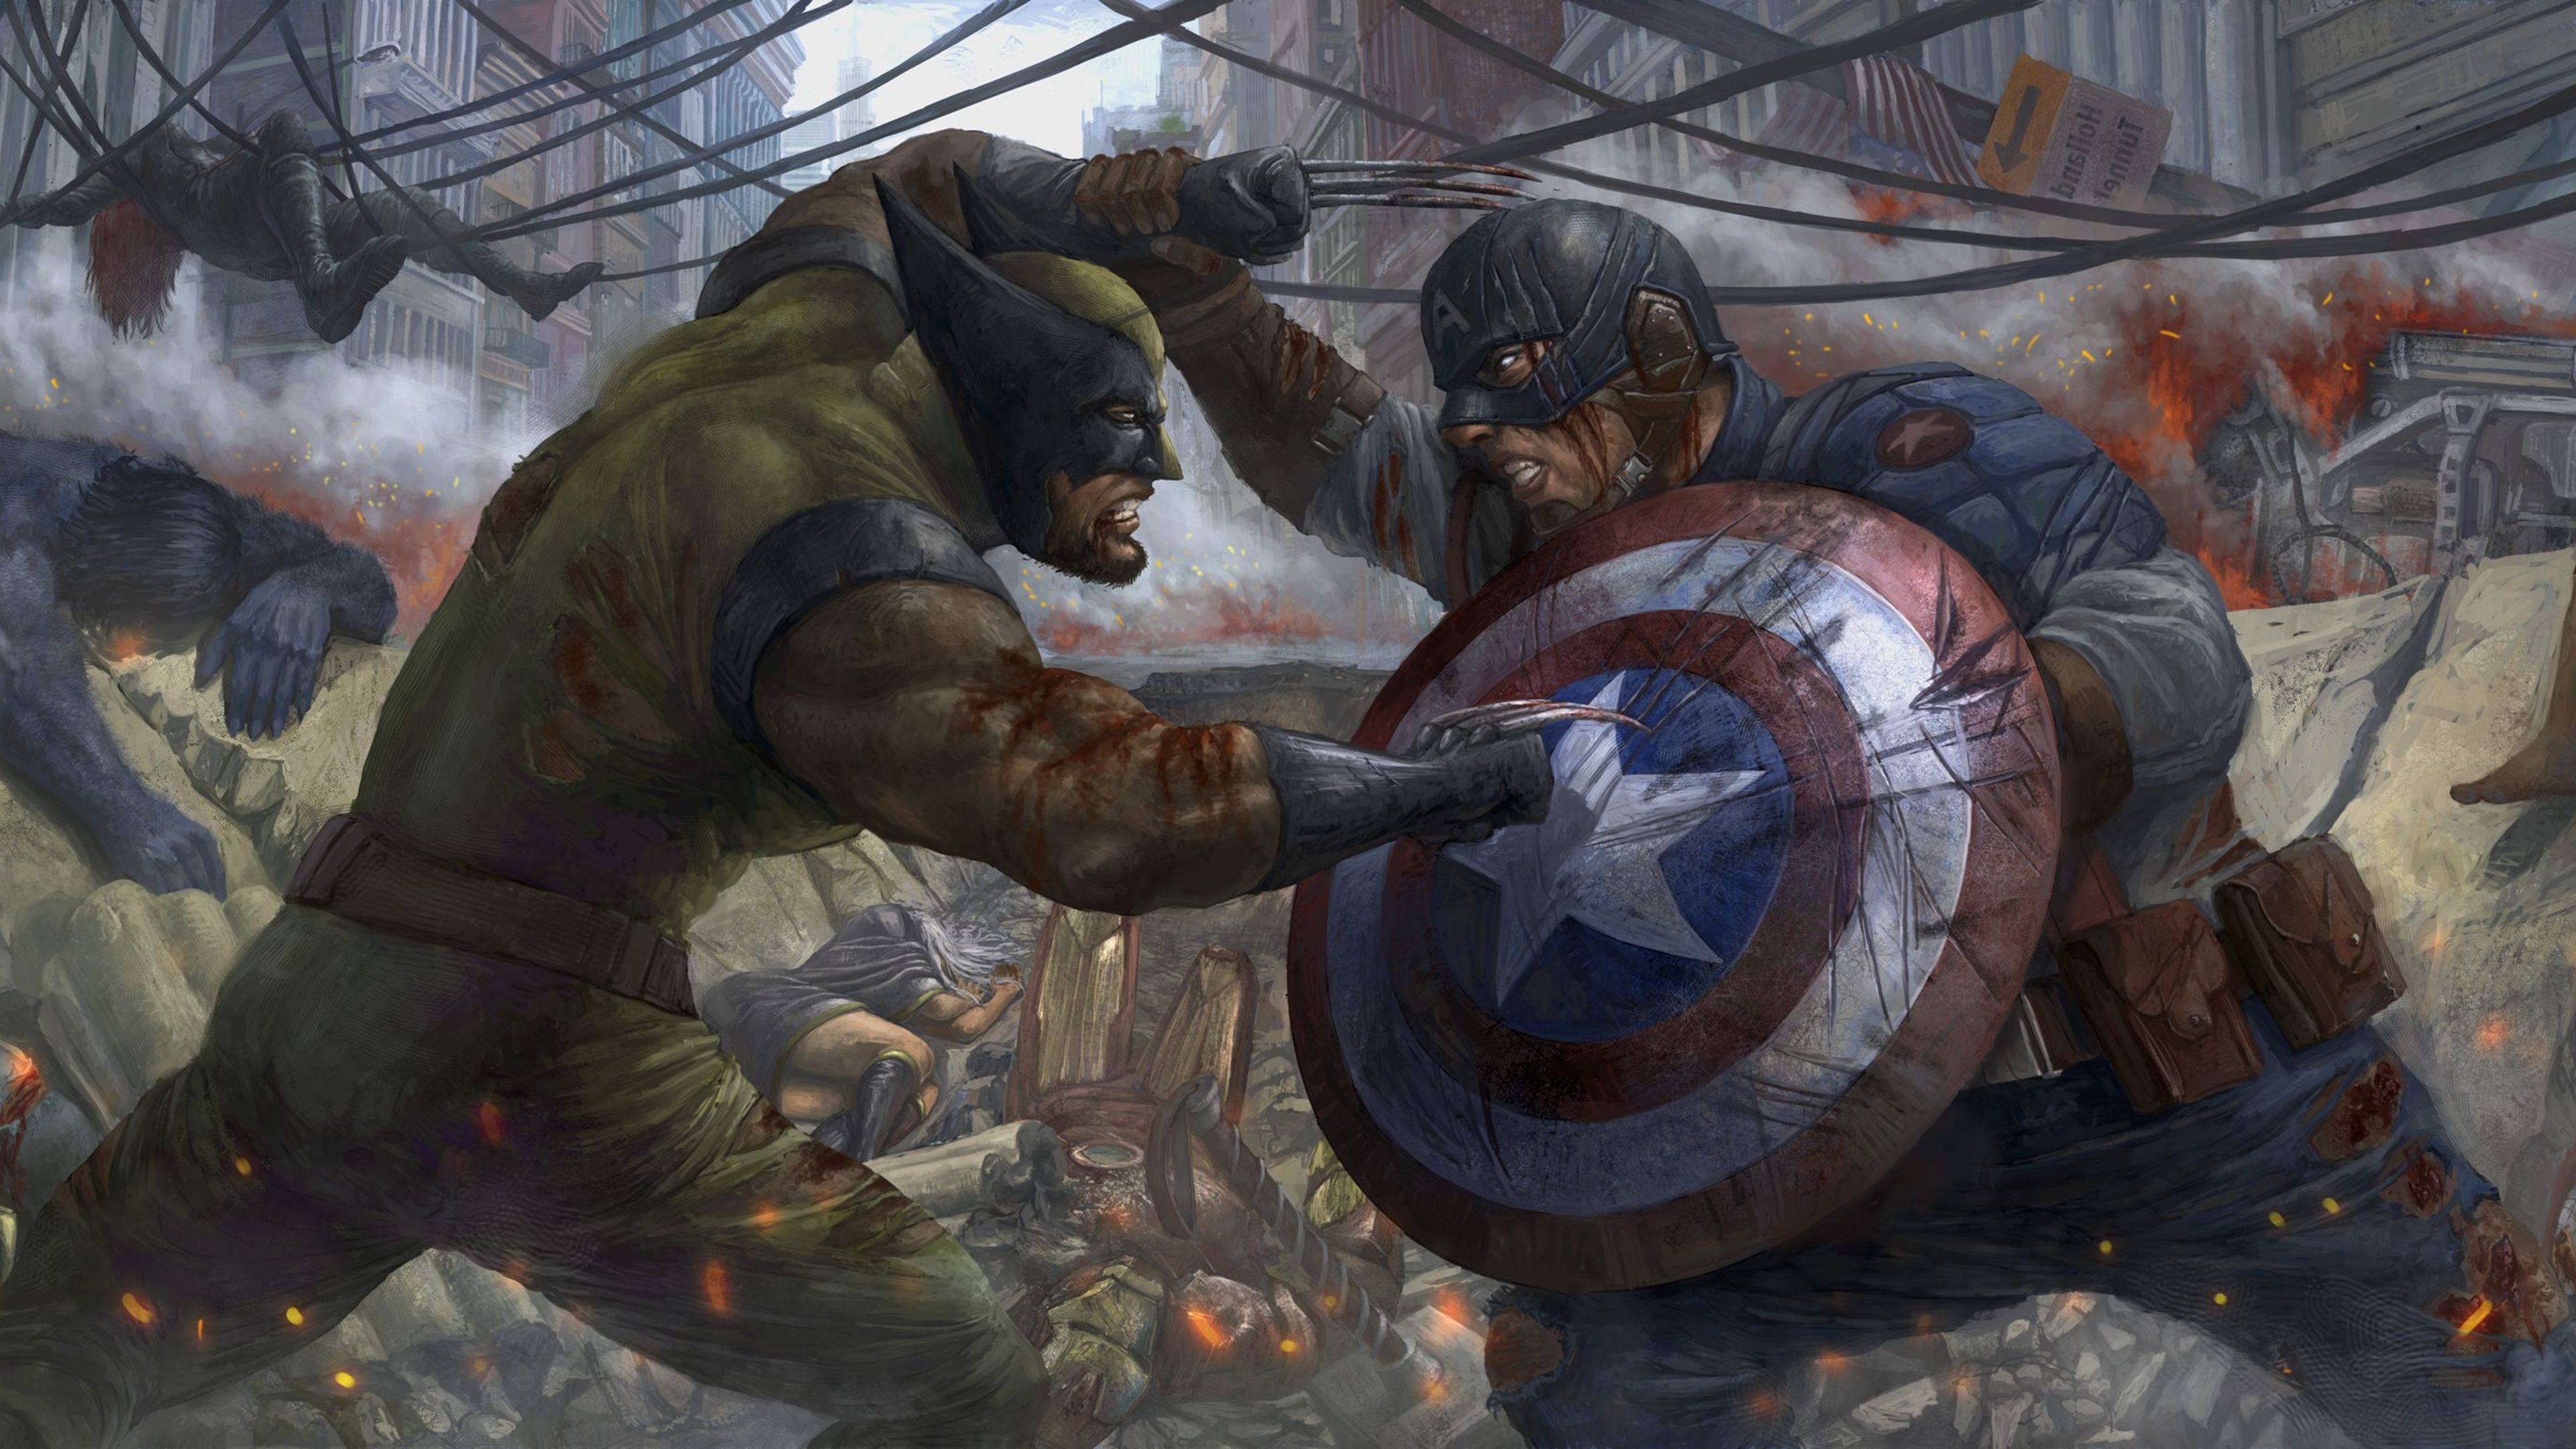 Wallpaper 4k Captain America Vs Wolverine Artwork Wallpaper, Captain America Wallpaper, Digital Art Wallpaper, Hd Wallpaper, Superheroes Wallpaper, Wolverine Wallpaper